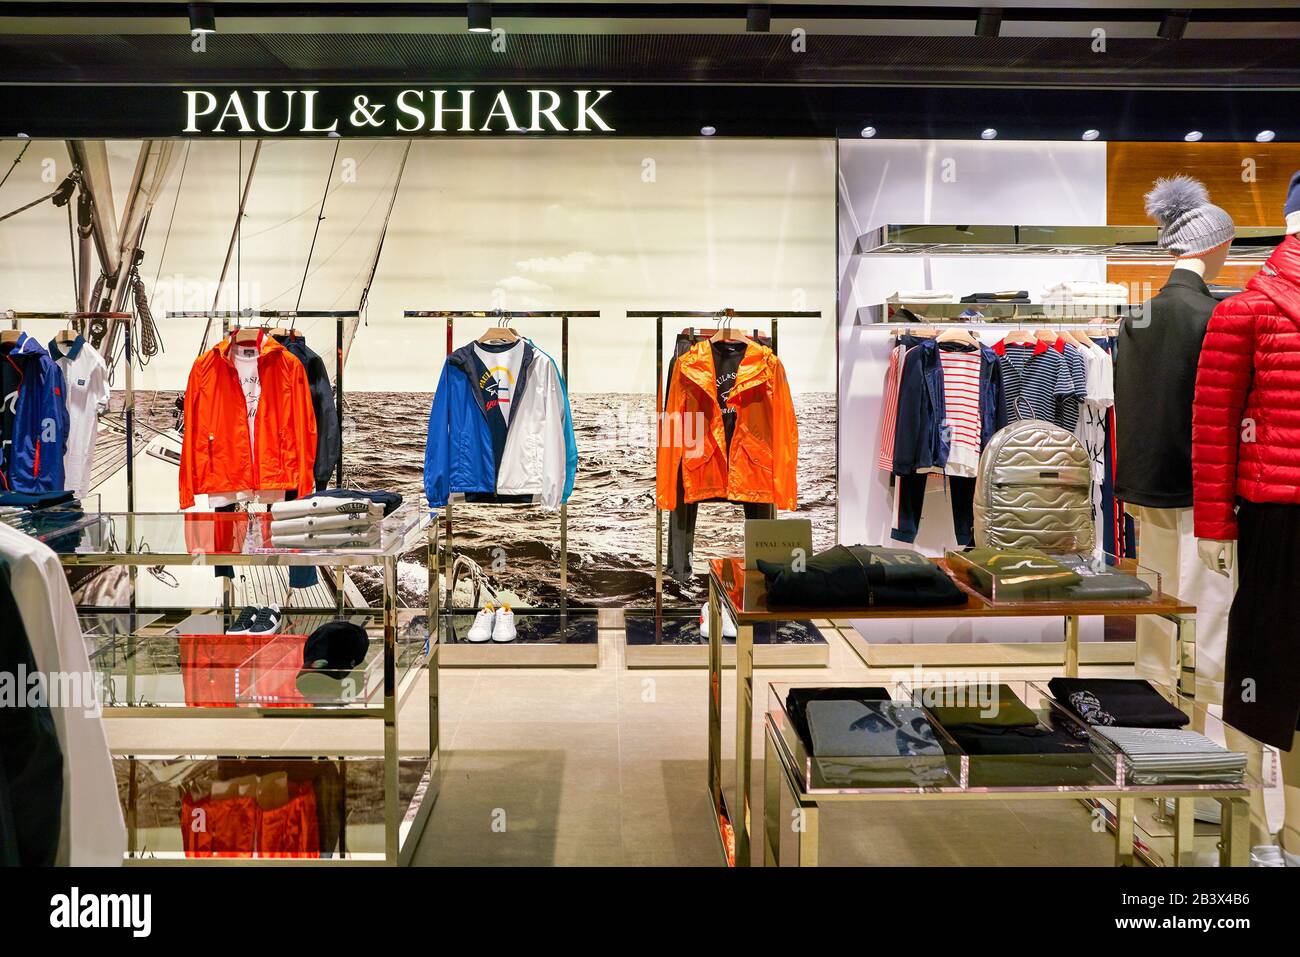 KONG, CHINA - ALREDEDOR DE ENERO de 2019: Fotografía interior de Paul & Shark en el centro Elements. Paul & es una Marca de ropa italiana fundada por